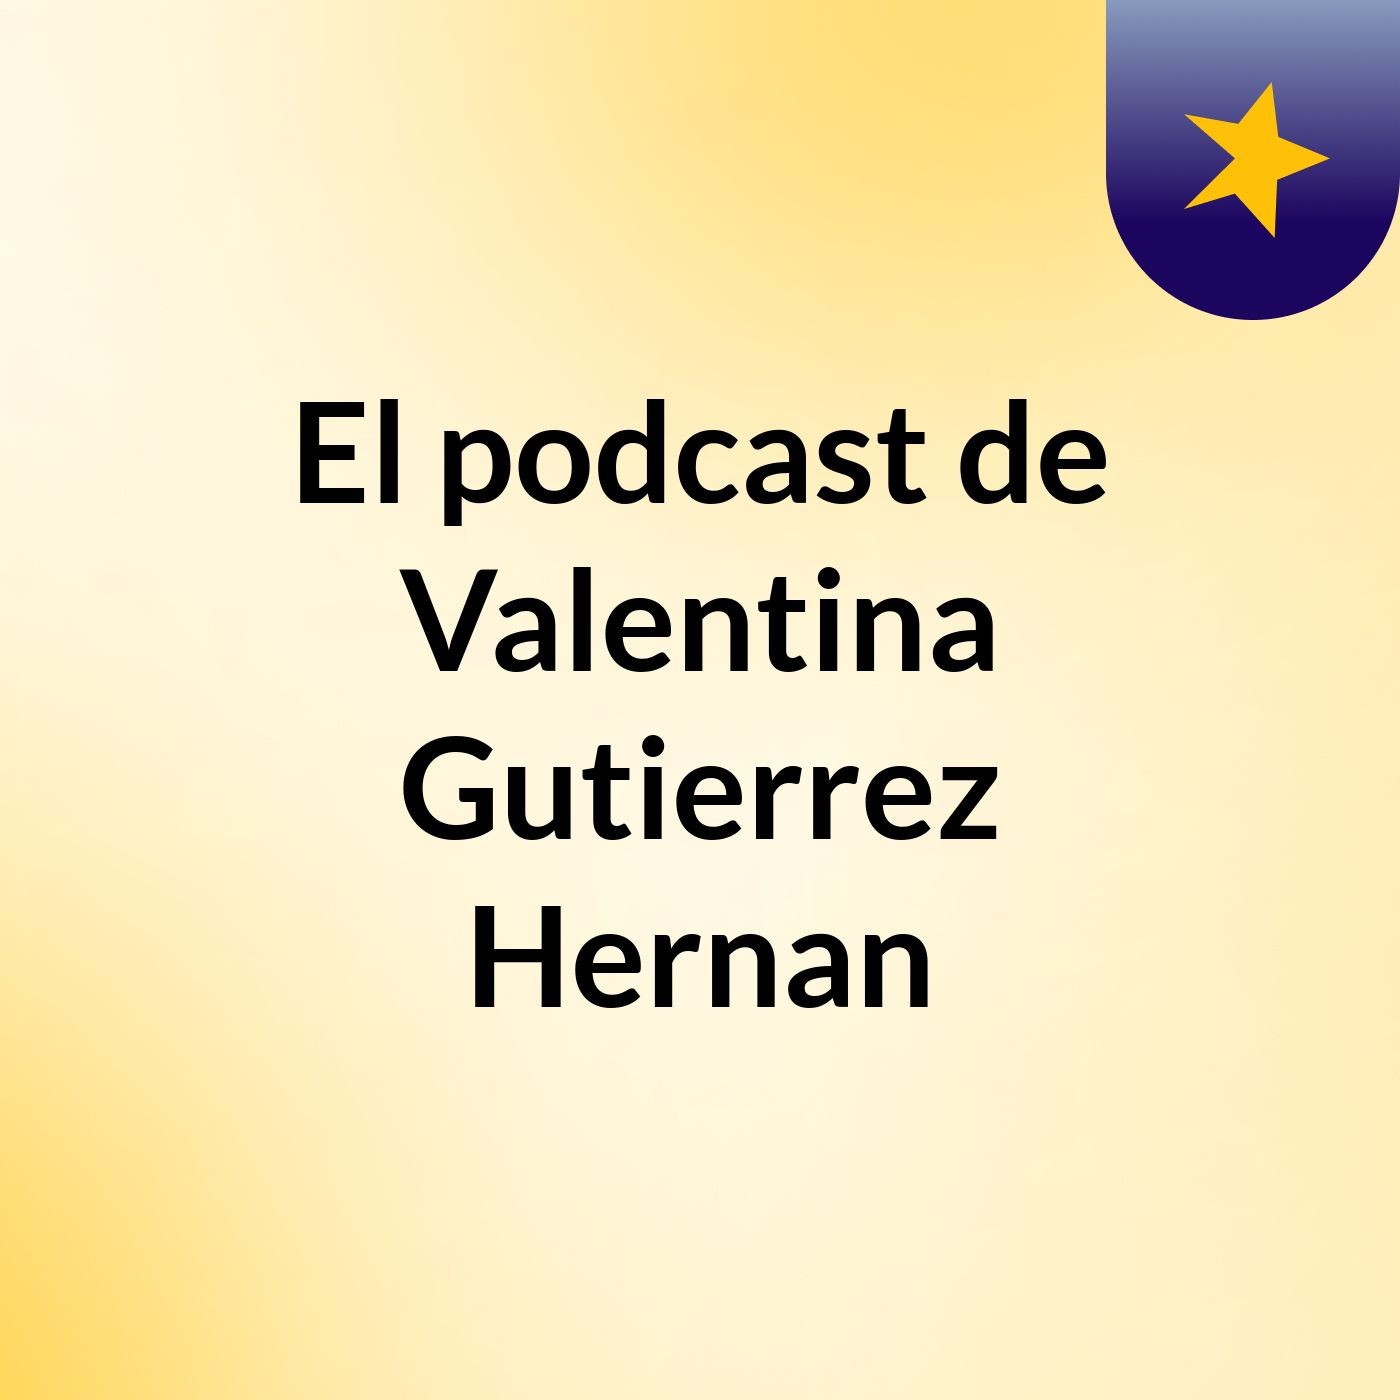 Episodio 10 - El podcast de Valentina Gutierrez Hernan